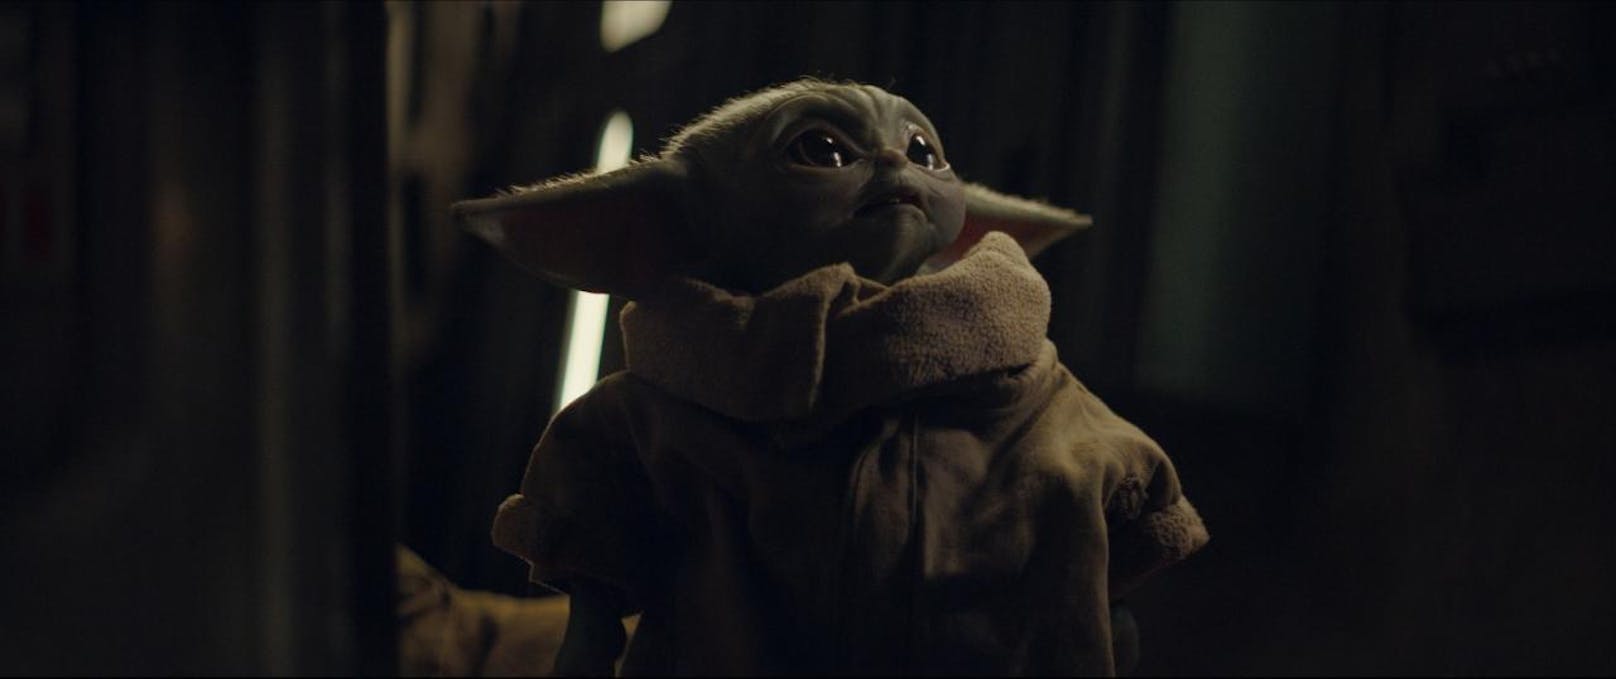 Auch "The Child", wie "Baby Yoda" offiziell heißt, kommt wieder.